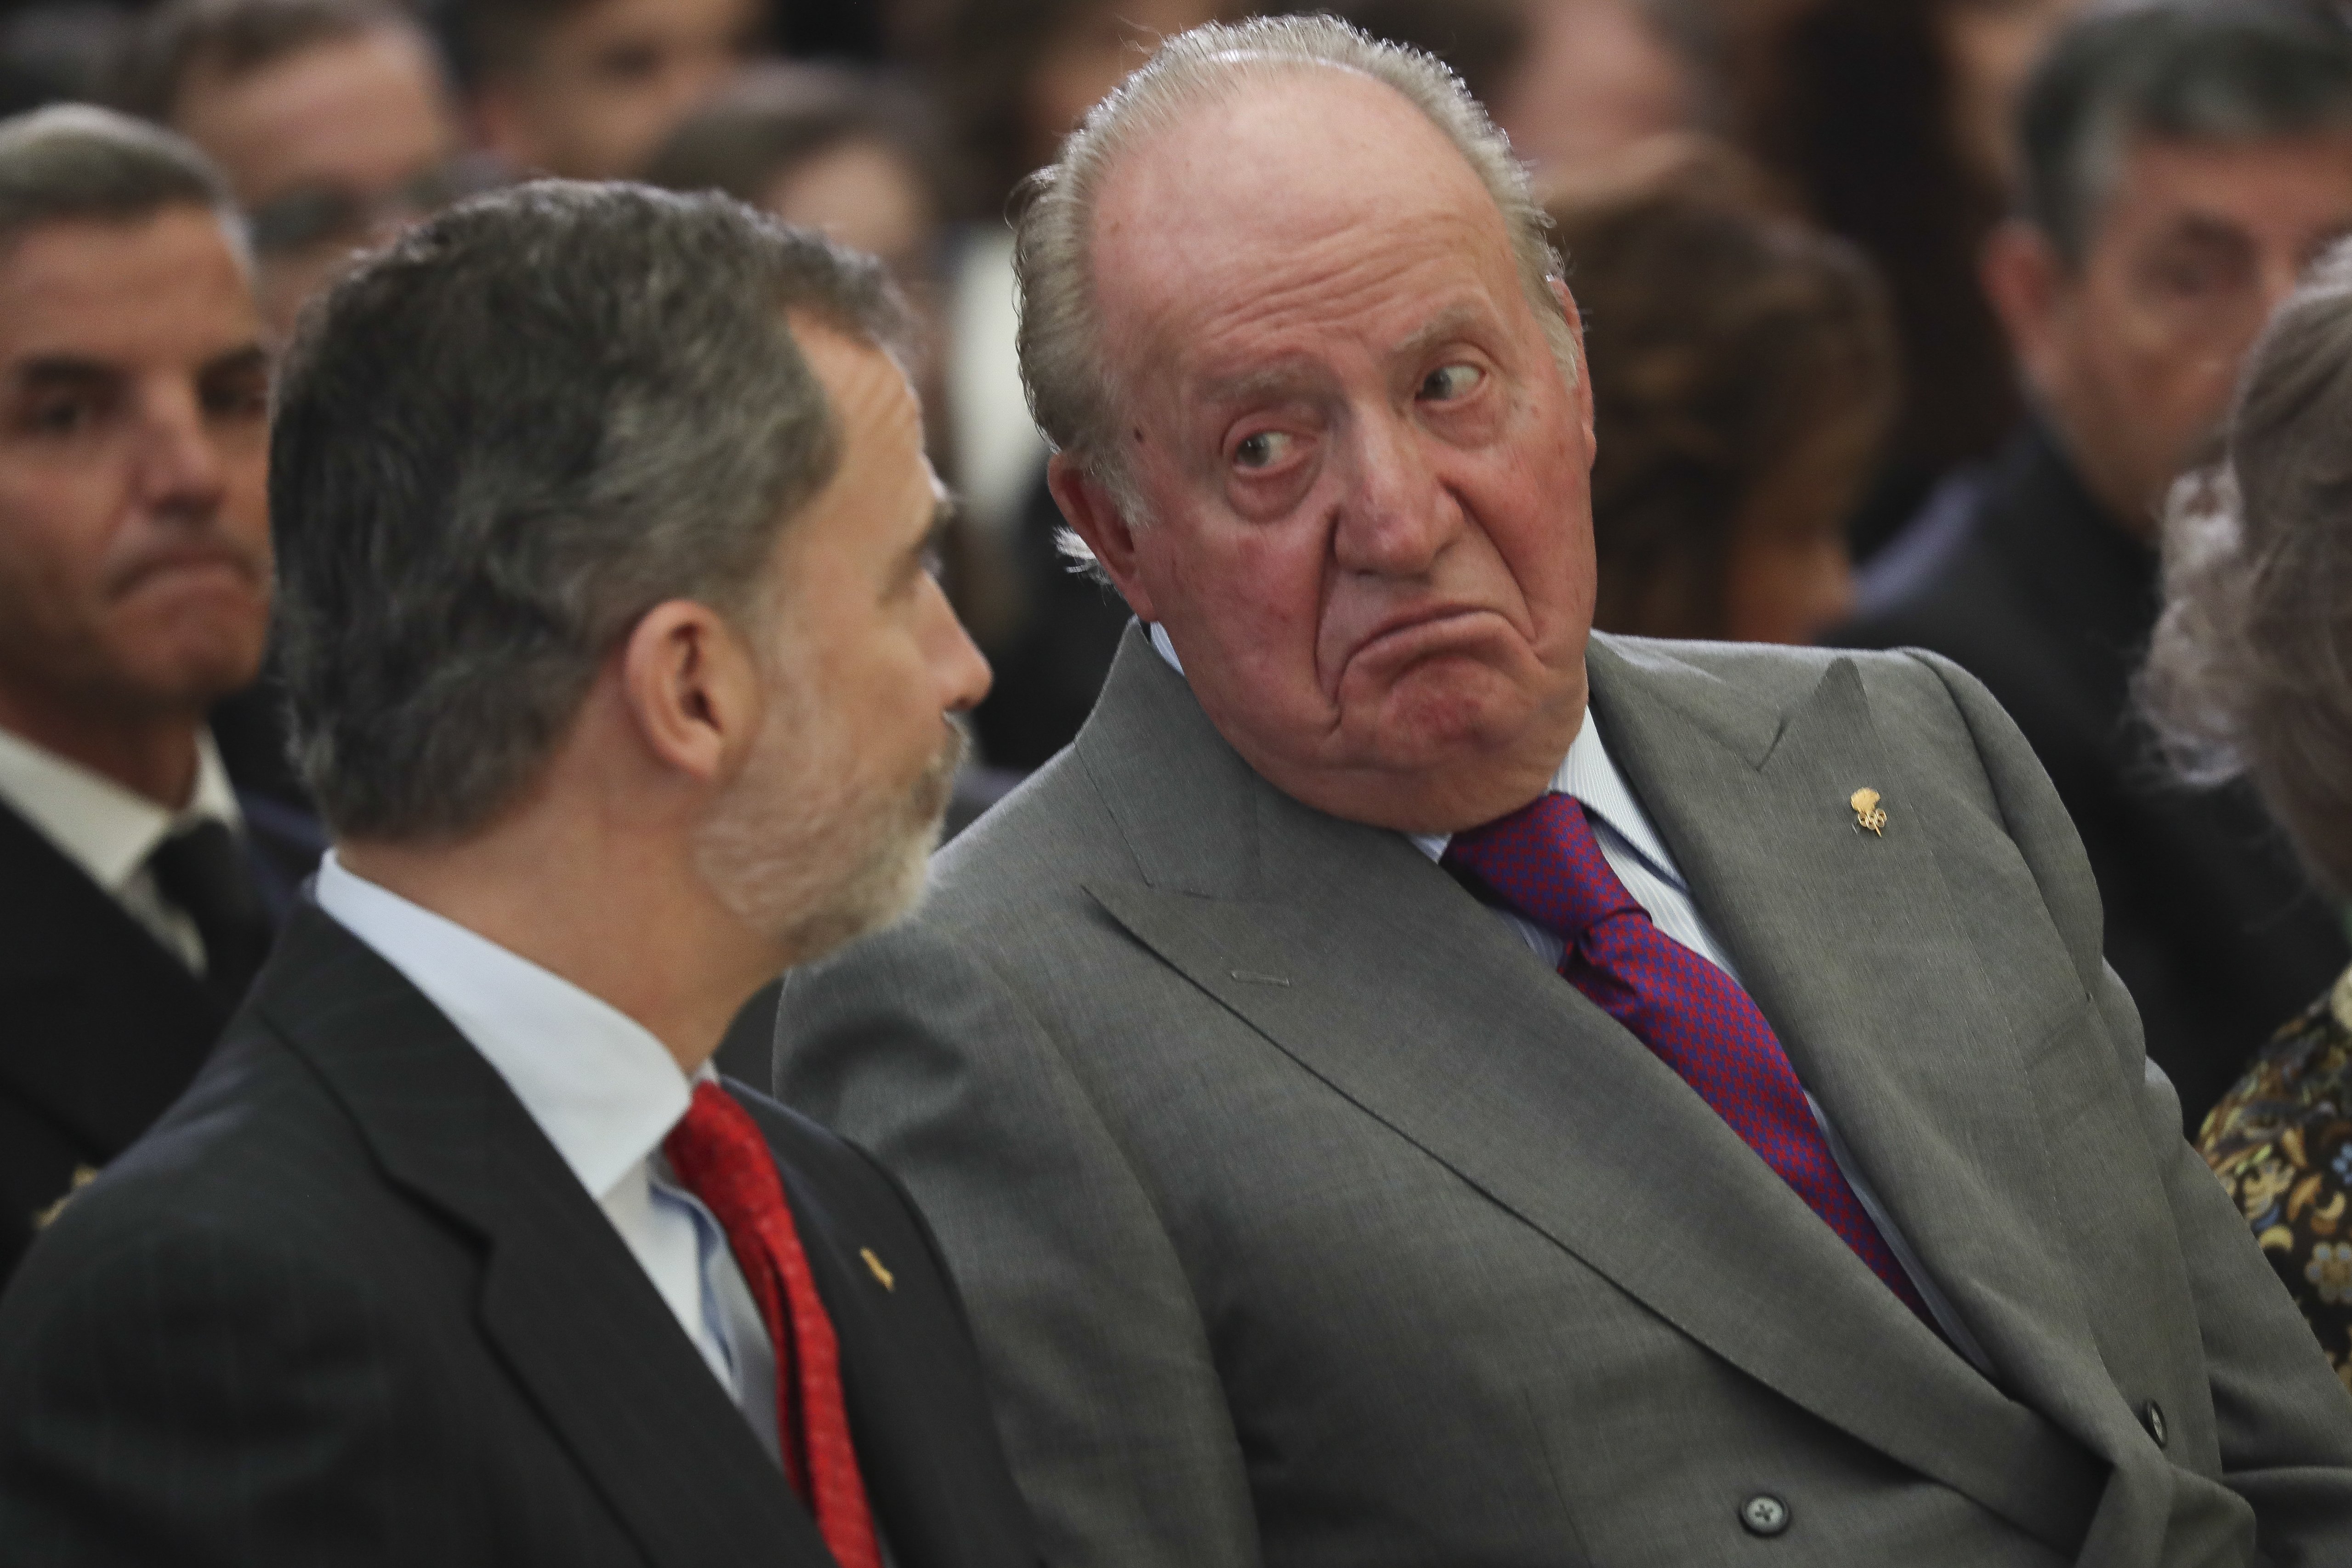 Felip criticat per no anar a l'aniversari de Joan Carles: "puede ser el último"